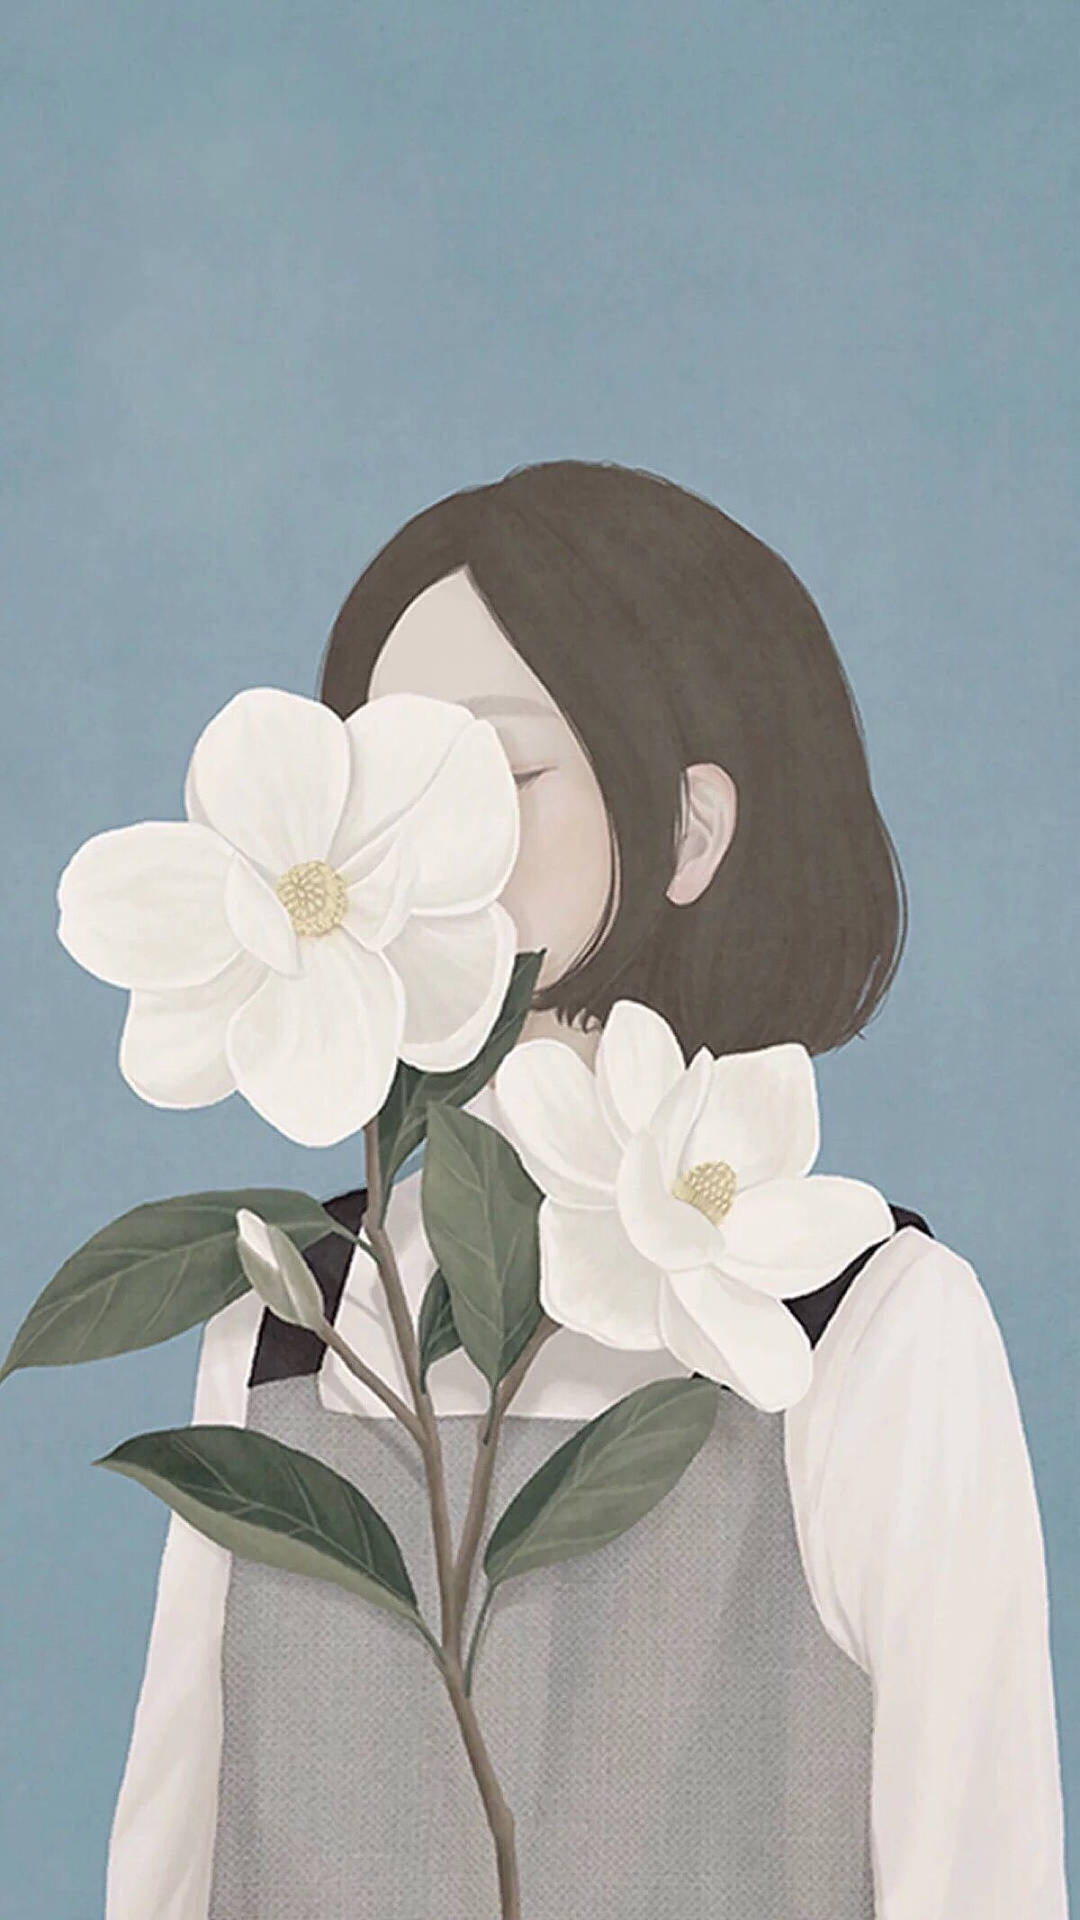 One-sided Love Flower Girl Art Background